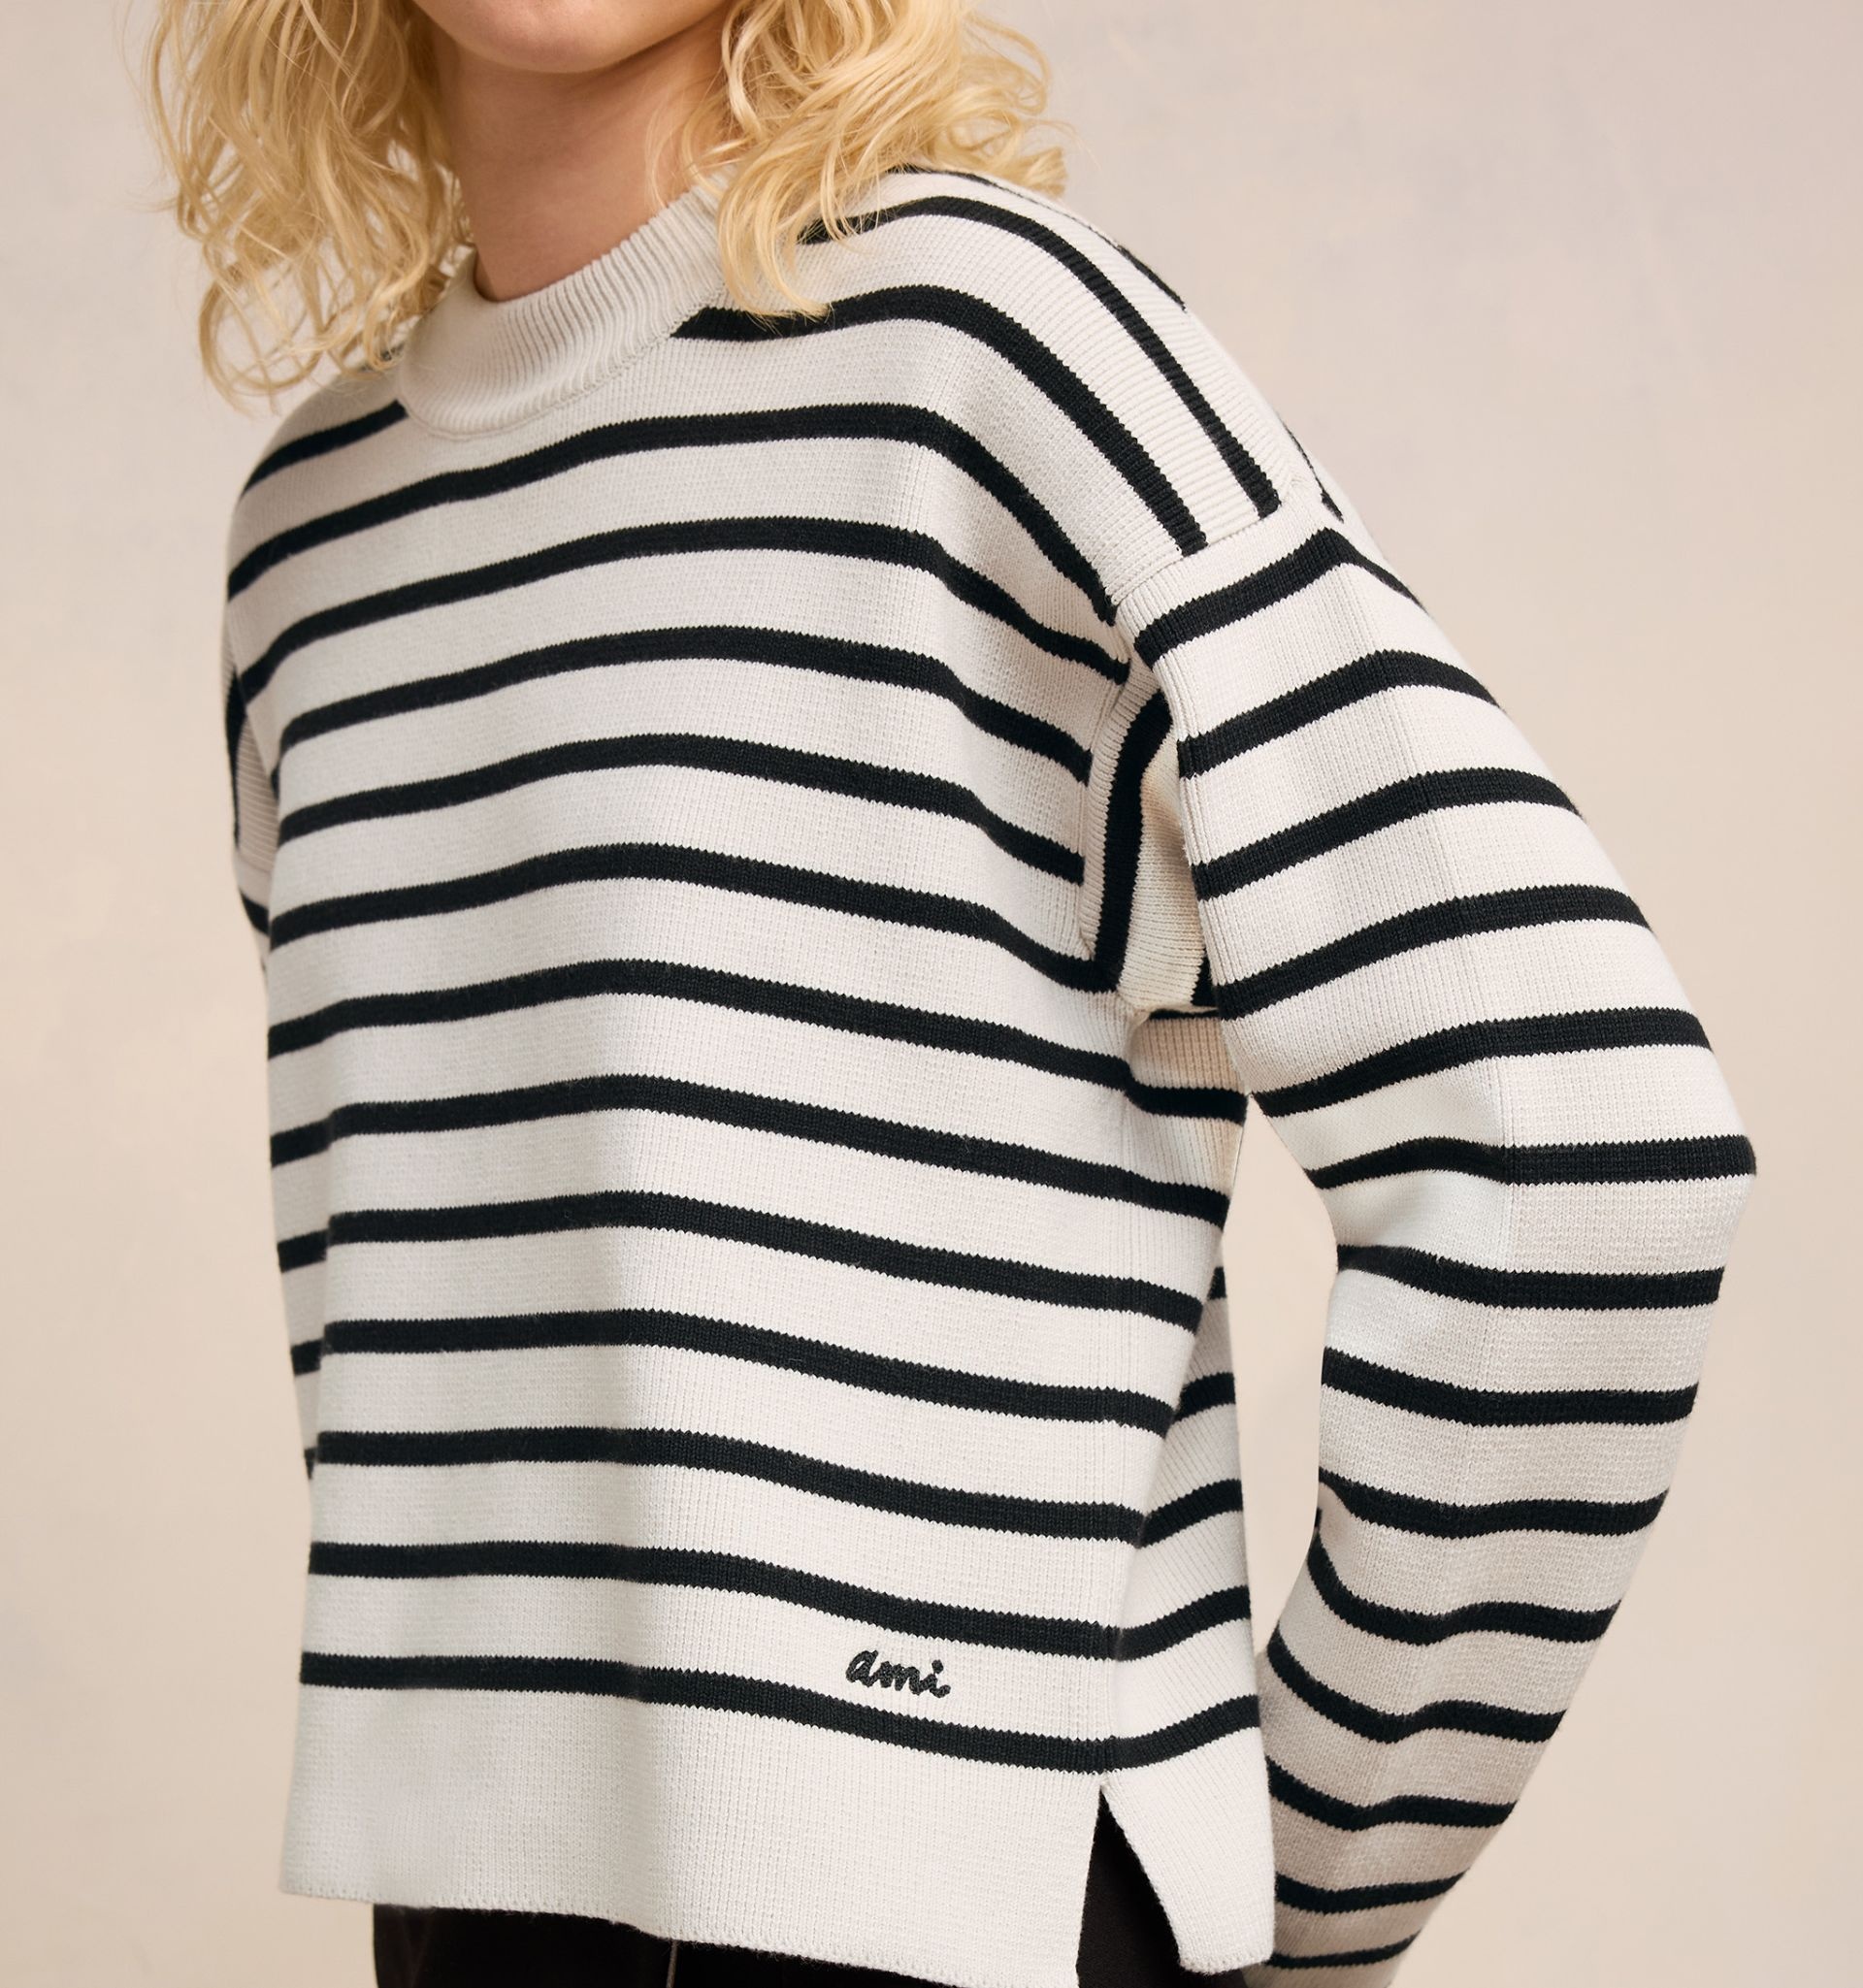 Ami Embroidery Sailor Crewneck Sweater - 8